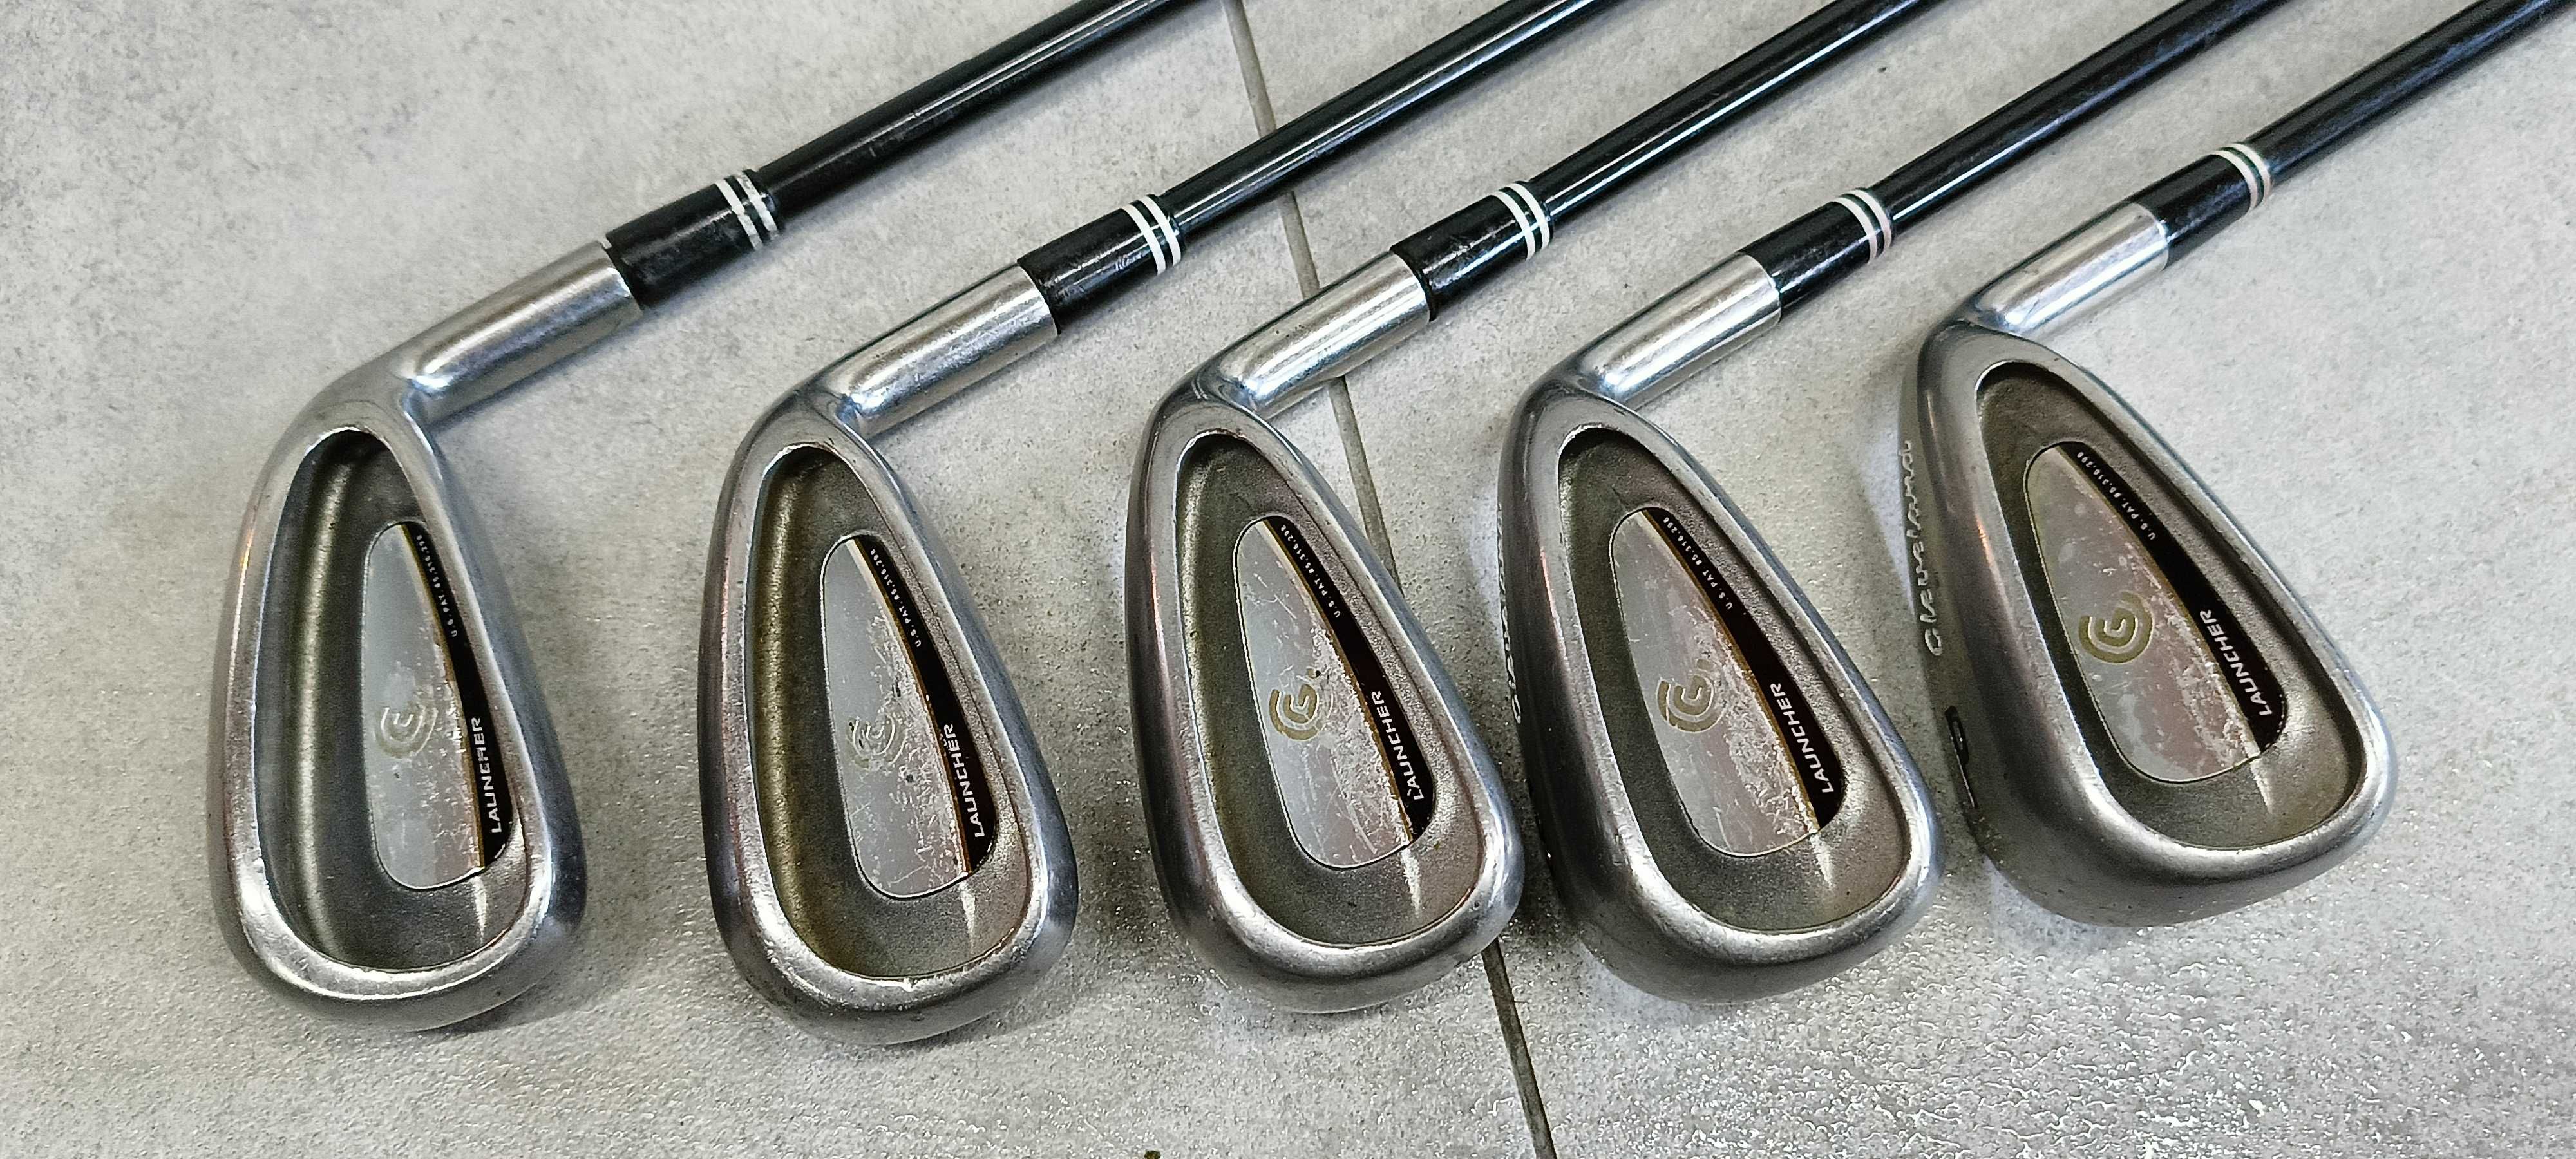 Cleveland Launcher irons kije do golfa golfowy golf zestaw